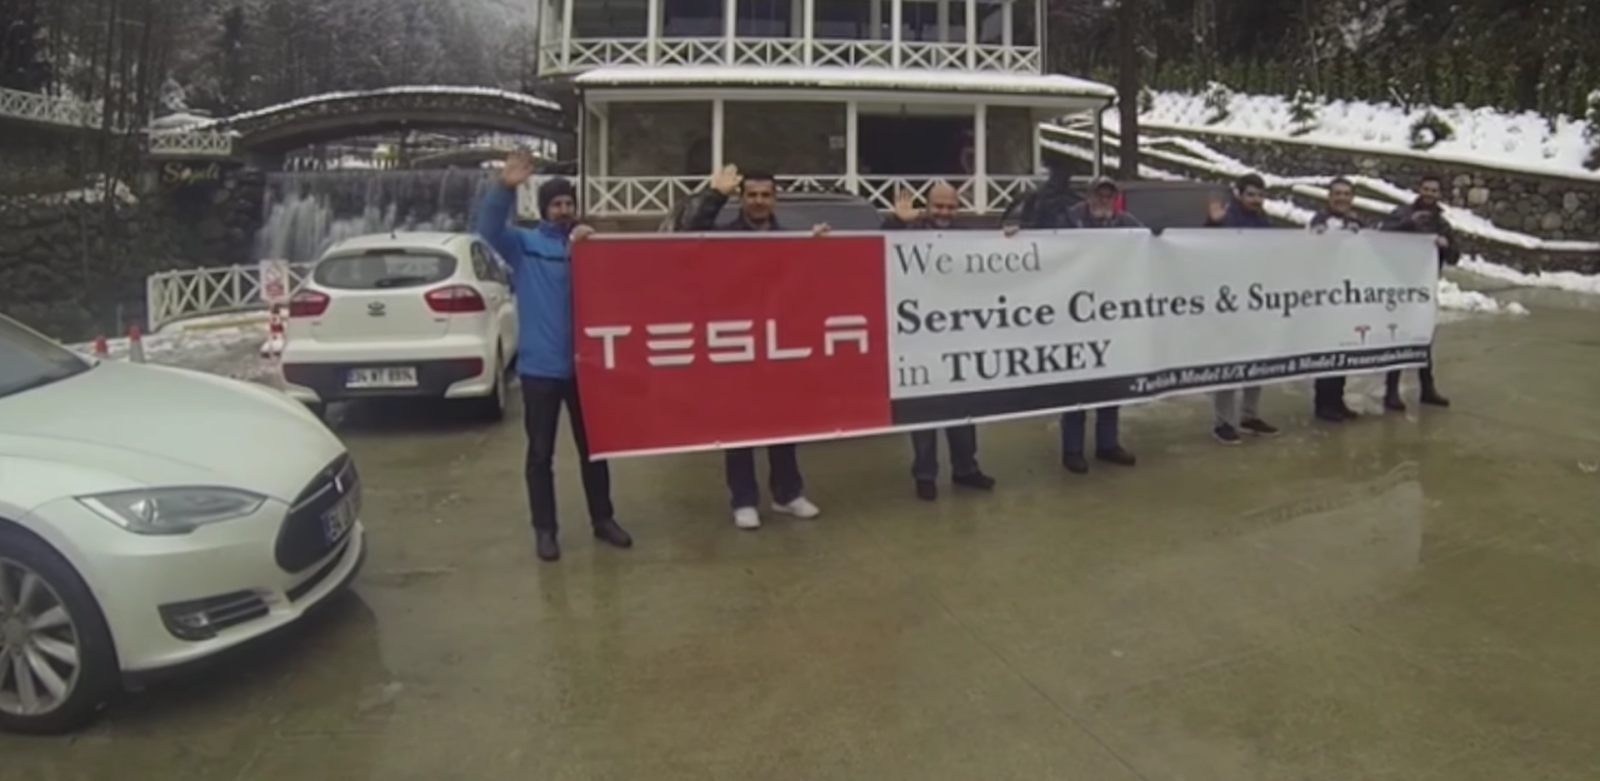 Tesla-Türkei